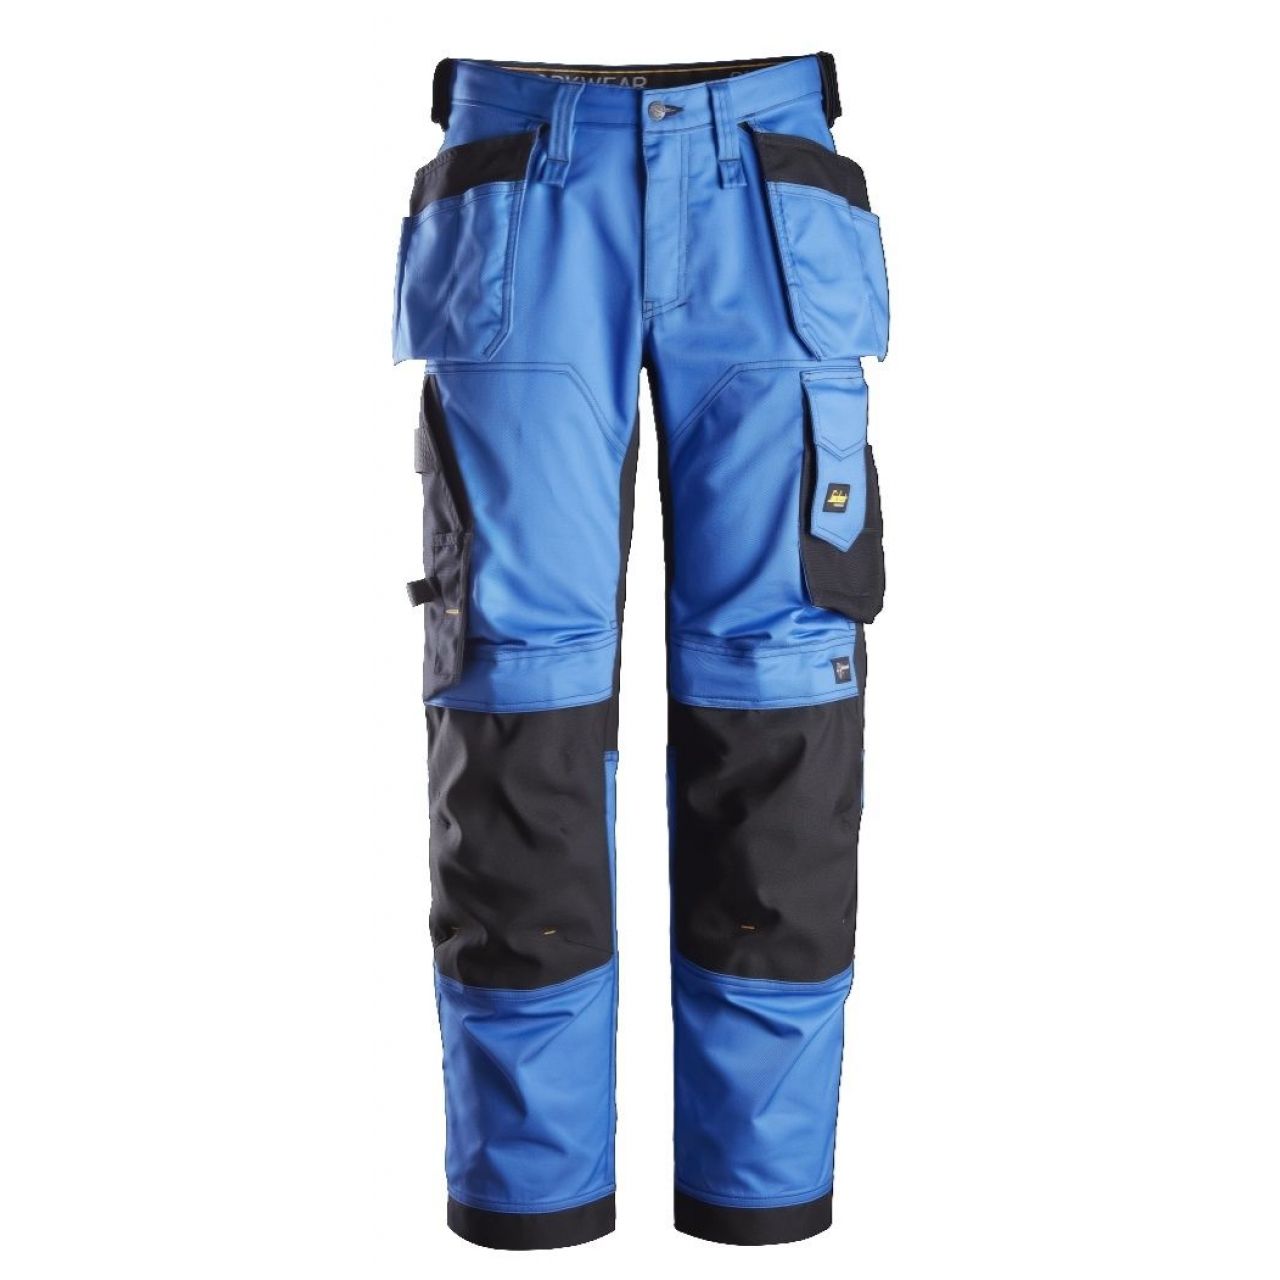 Pantalon elastico ajuste holgado AllroundWork bolsillos flotantes azul-negro talla 256